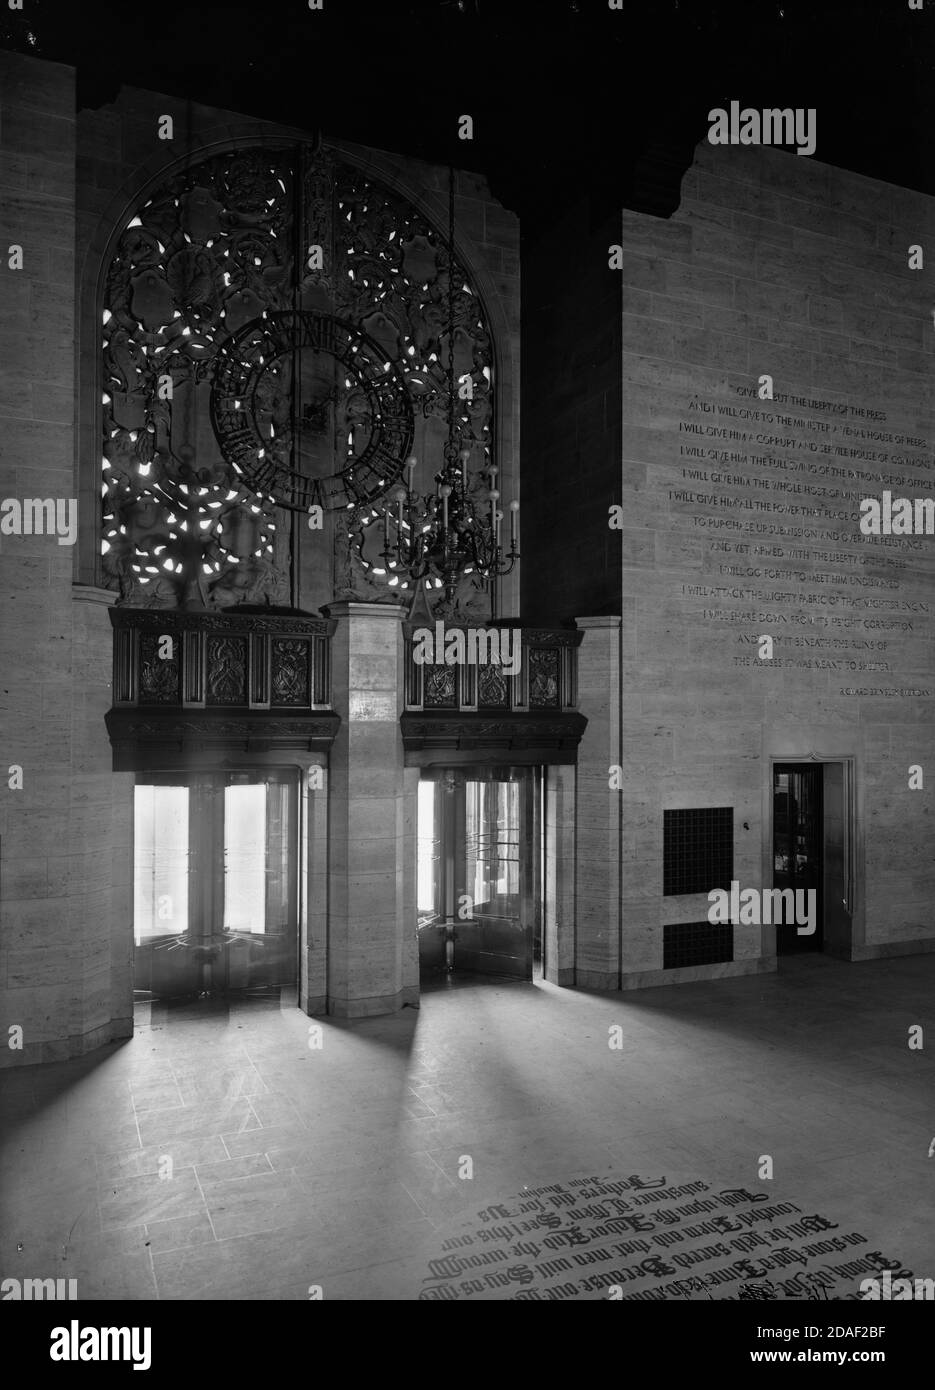 Vue intérieure de l'entrée de la Tour Tribune, montrant John Ruskin citation, architecte Howells et Hood, à Chicago, Illinois, vers 1925-1936. Banque D'Images